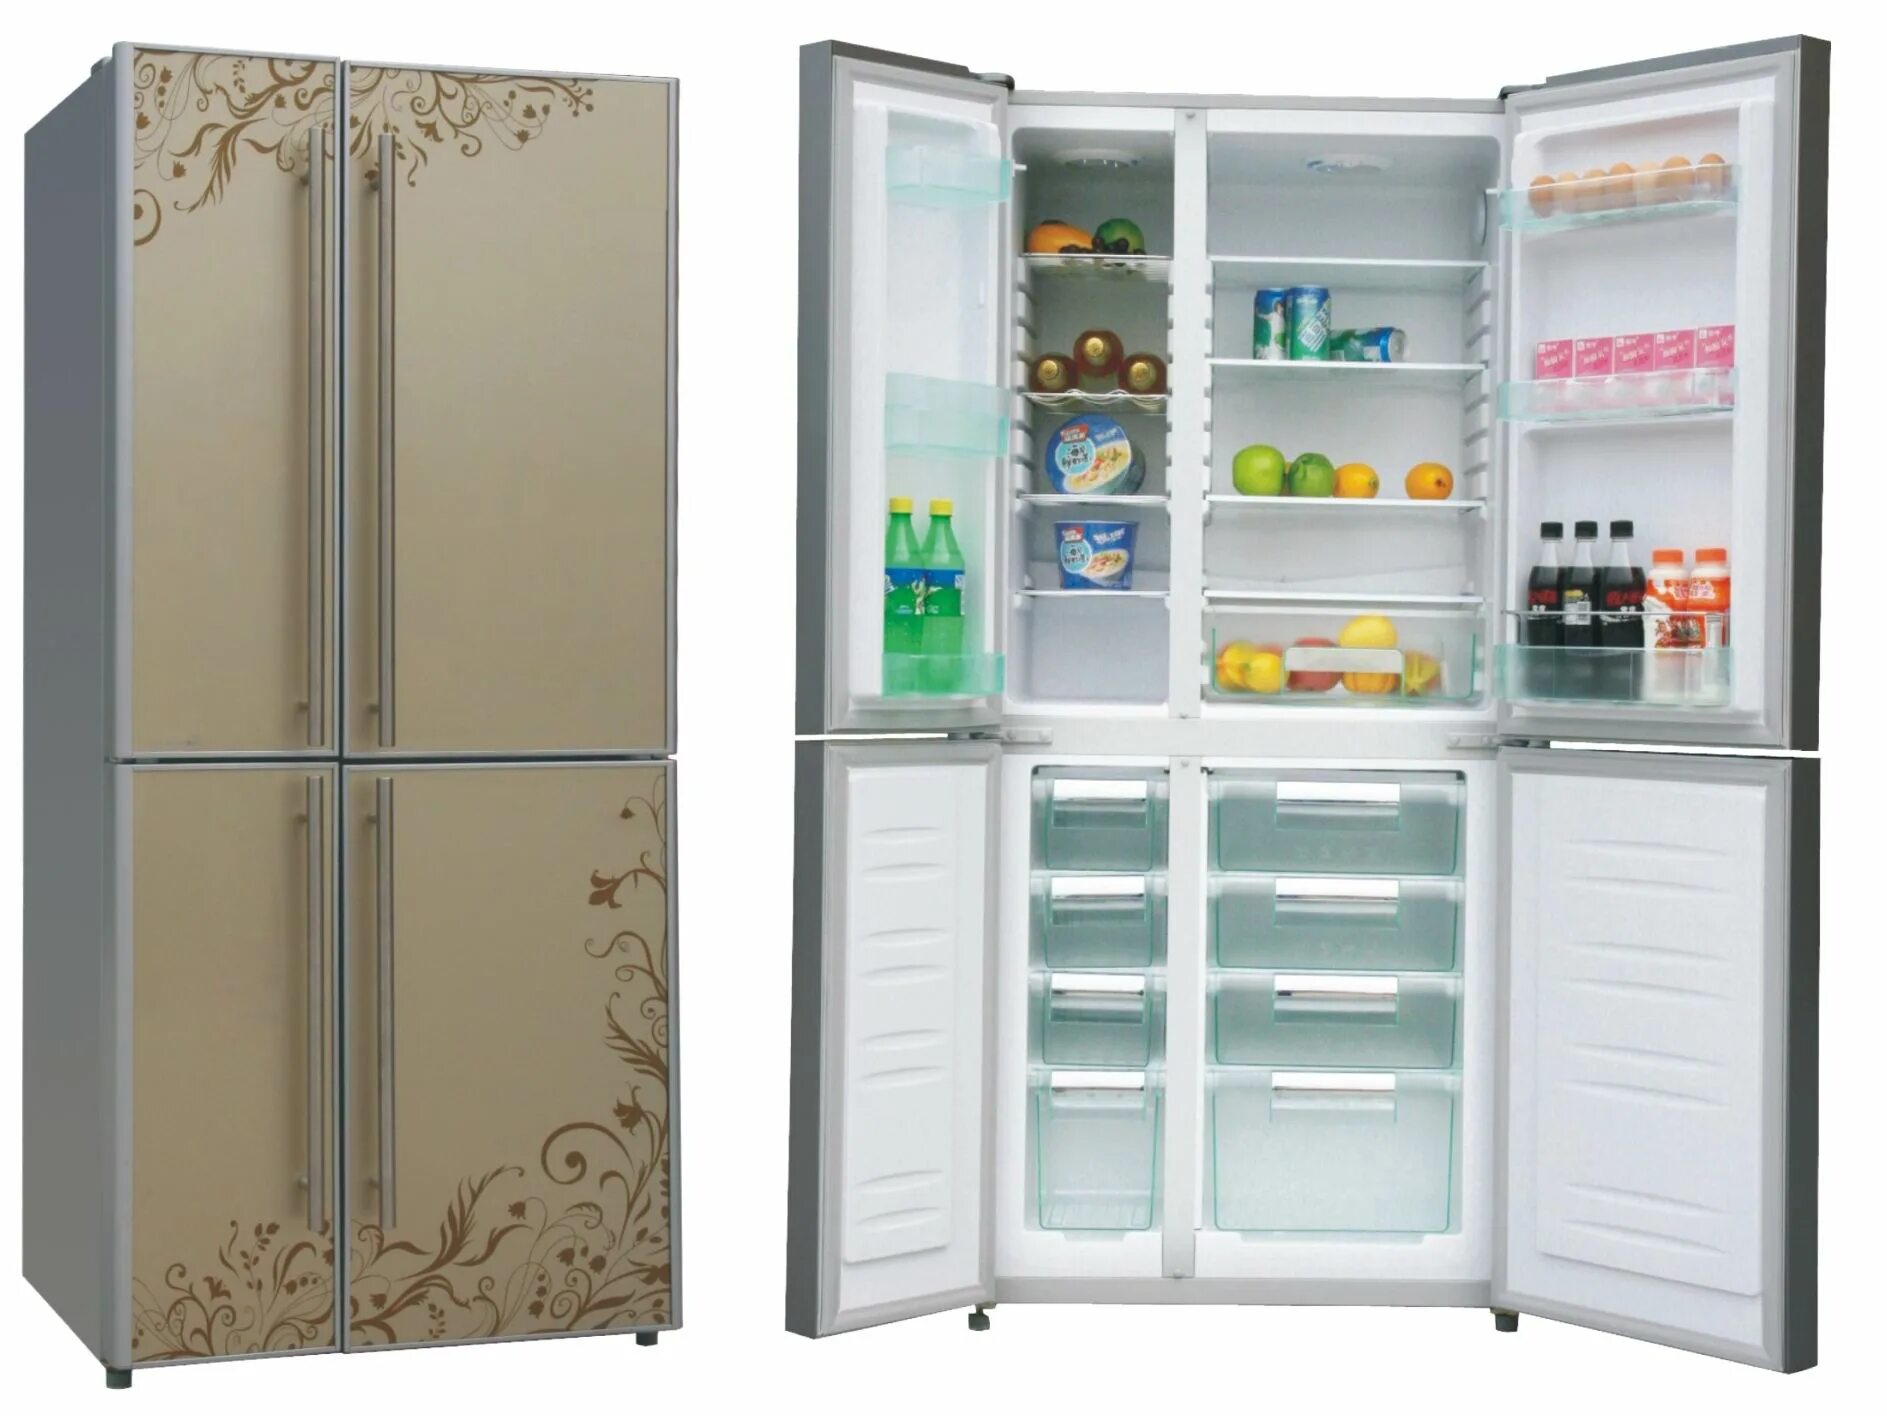 Холодильник (Side-by-Side) Ascoli acdb520wib. Холодильник (Side-by-Side) LG GC-q247cbdc. Холодильник Side by Side с большой морозилкой. Холодильник (Side-by-Side) Thomson ssc30ei32. Купить холодильник в подольске